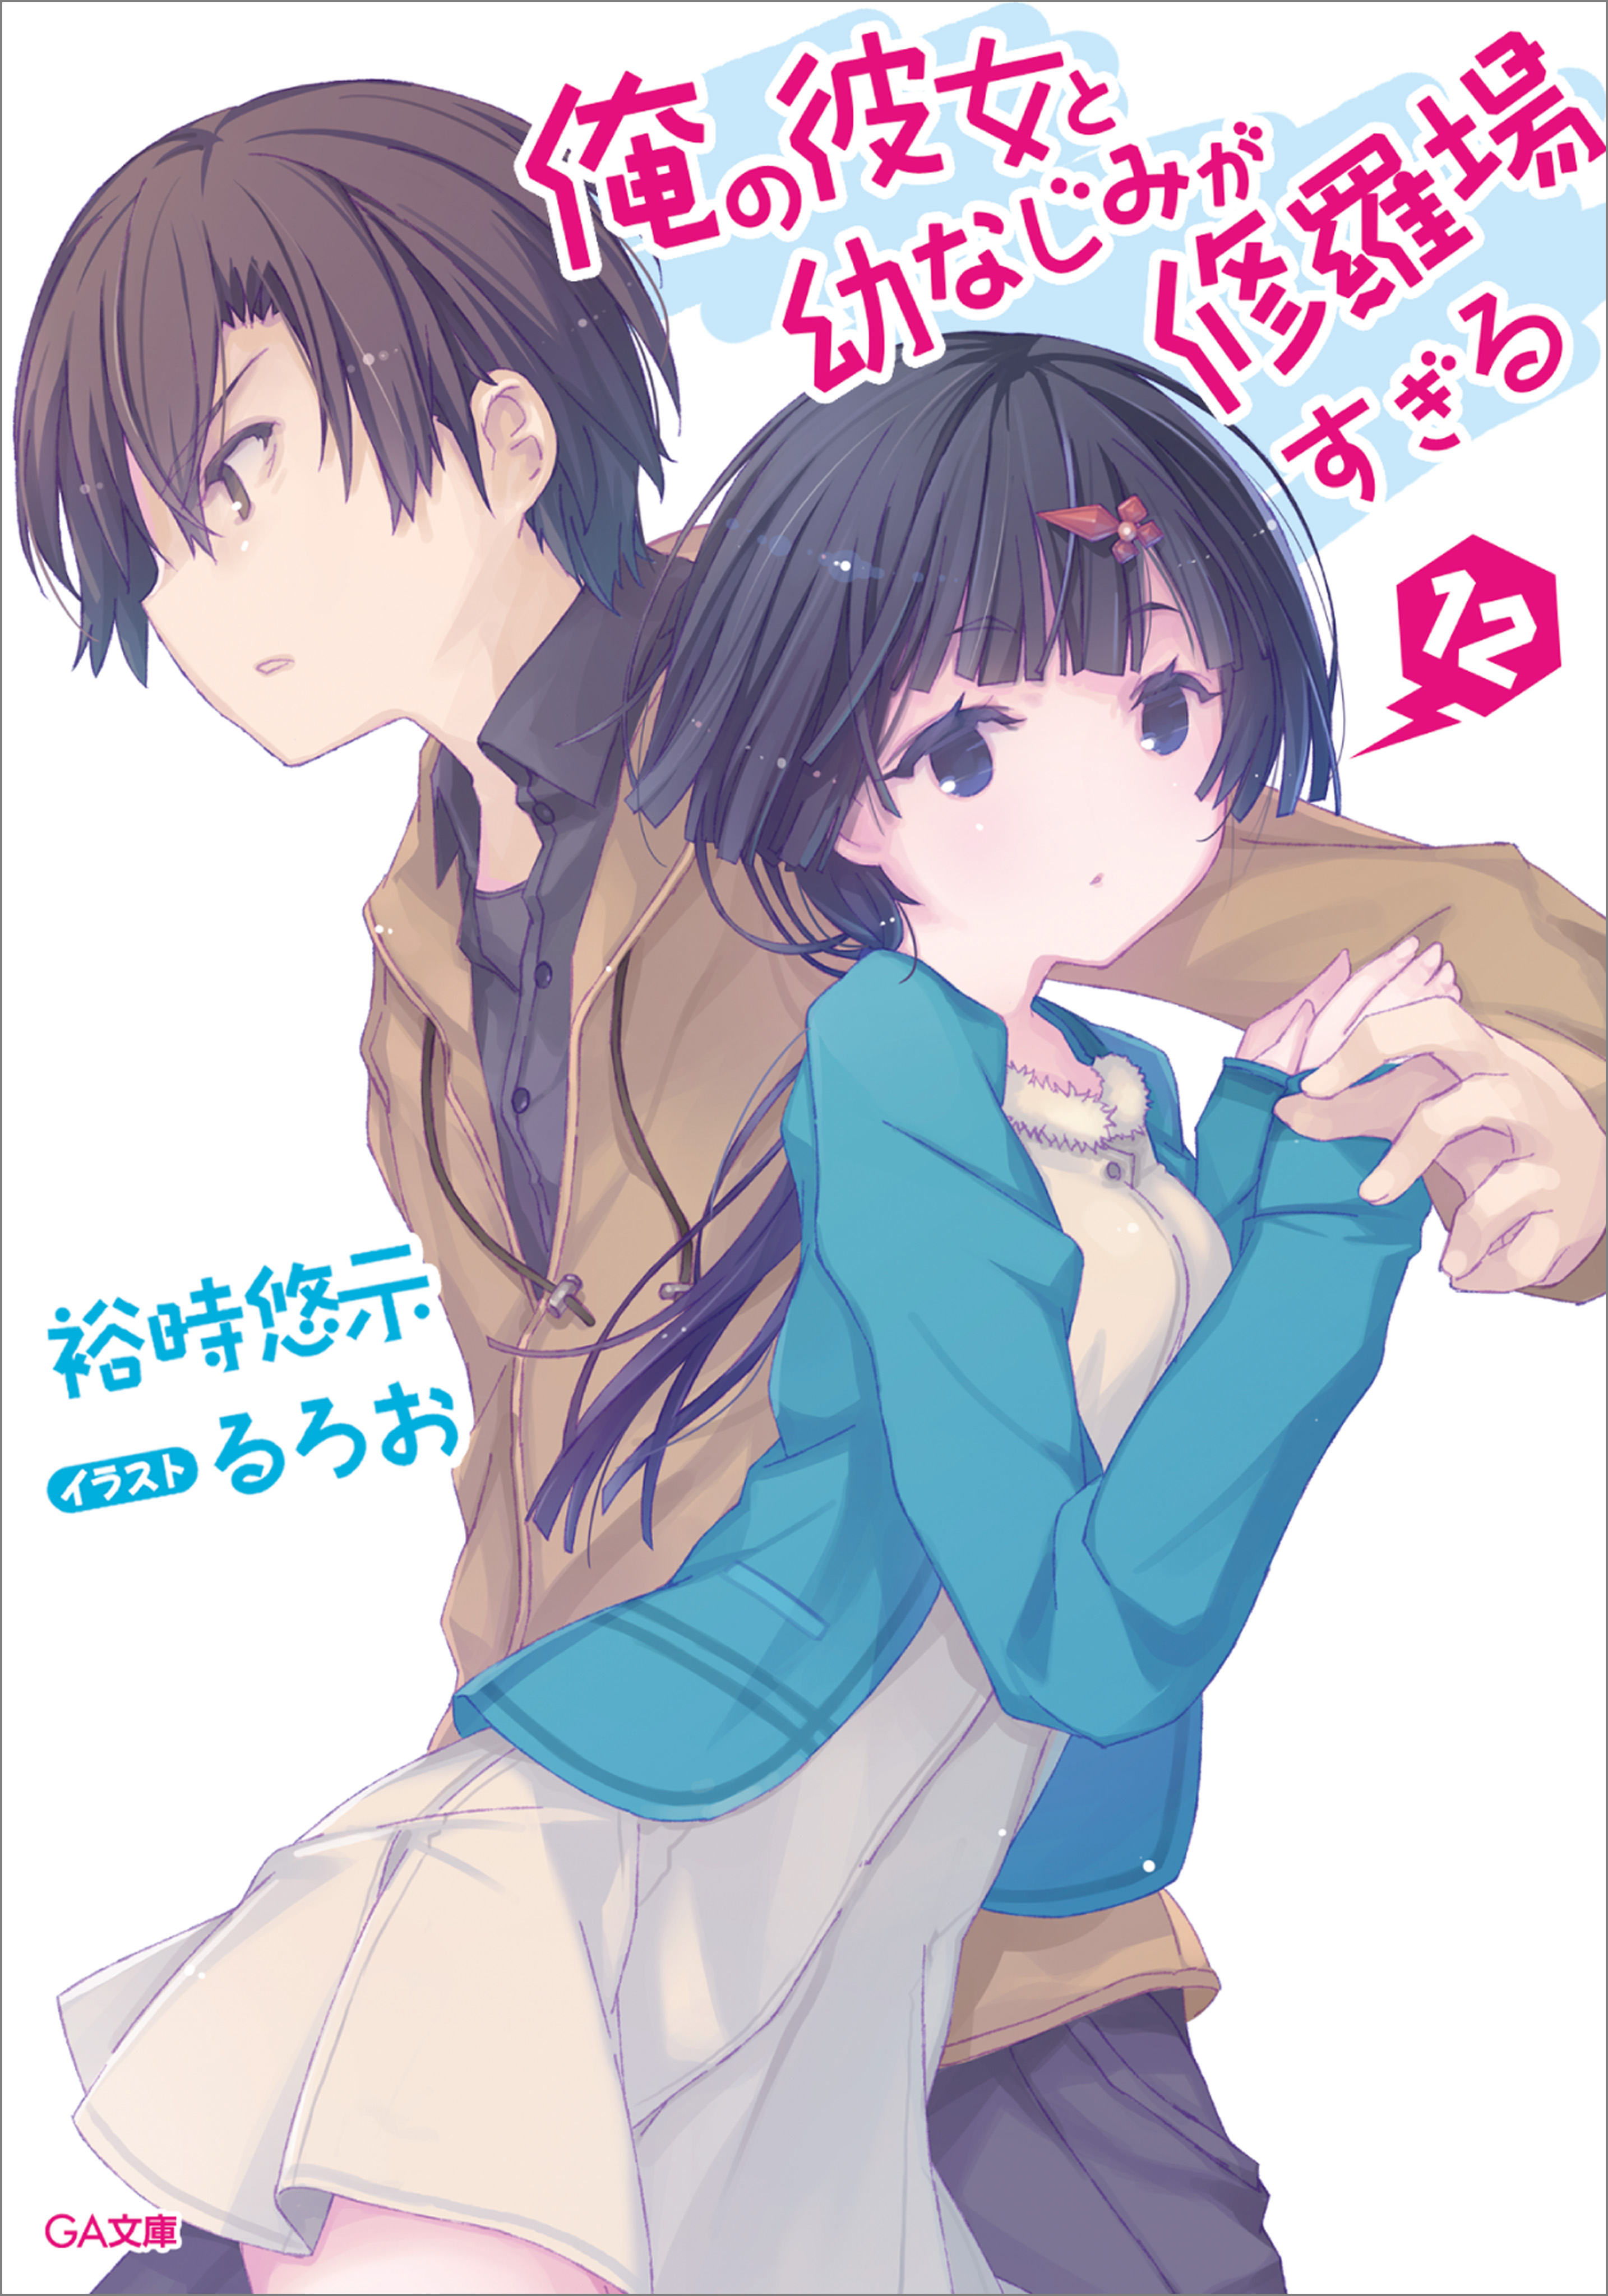 Osananajimi ga Zettai ni Makenai Rabu Kome Light Novels Anime Adaptation  Set For April